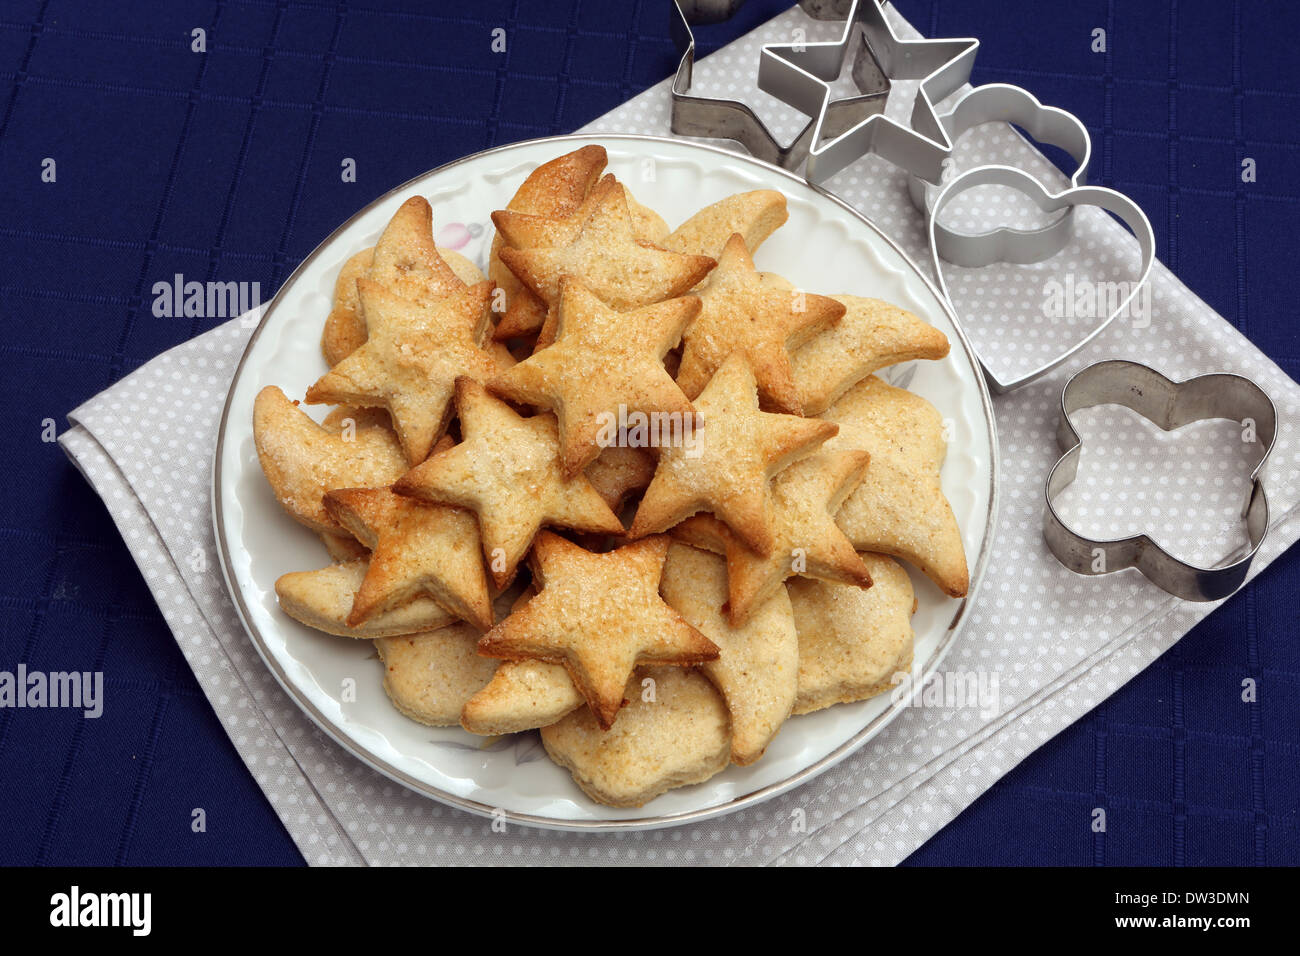 Frollini biscotti di Natale con lo zucchero sulla piastra Foto Stock